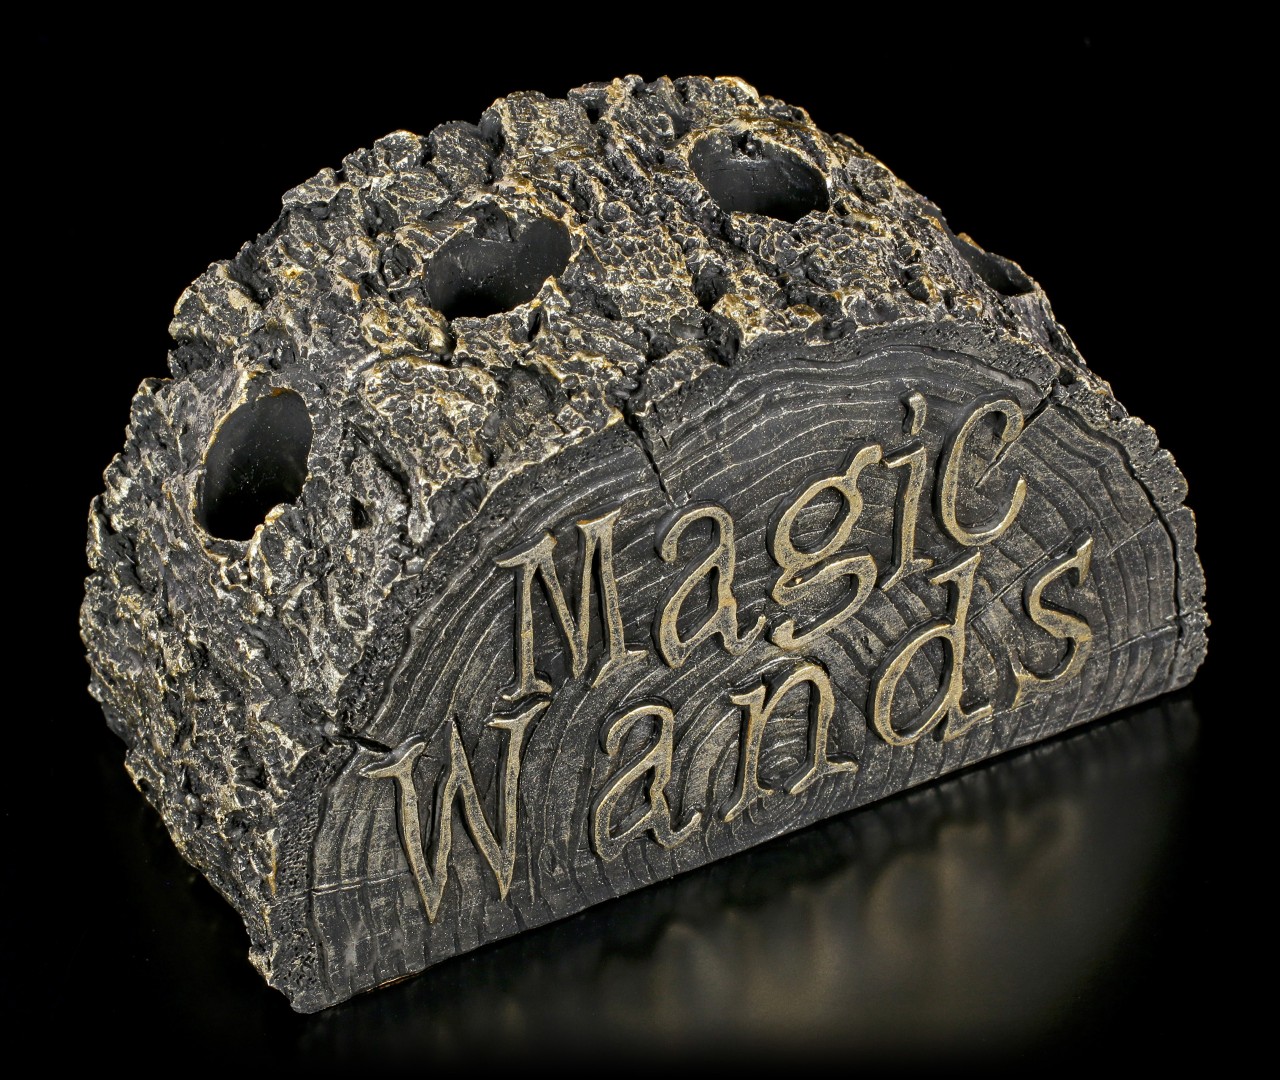 Magic Wands Holder - Stump of Magic